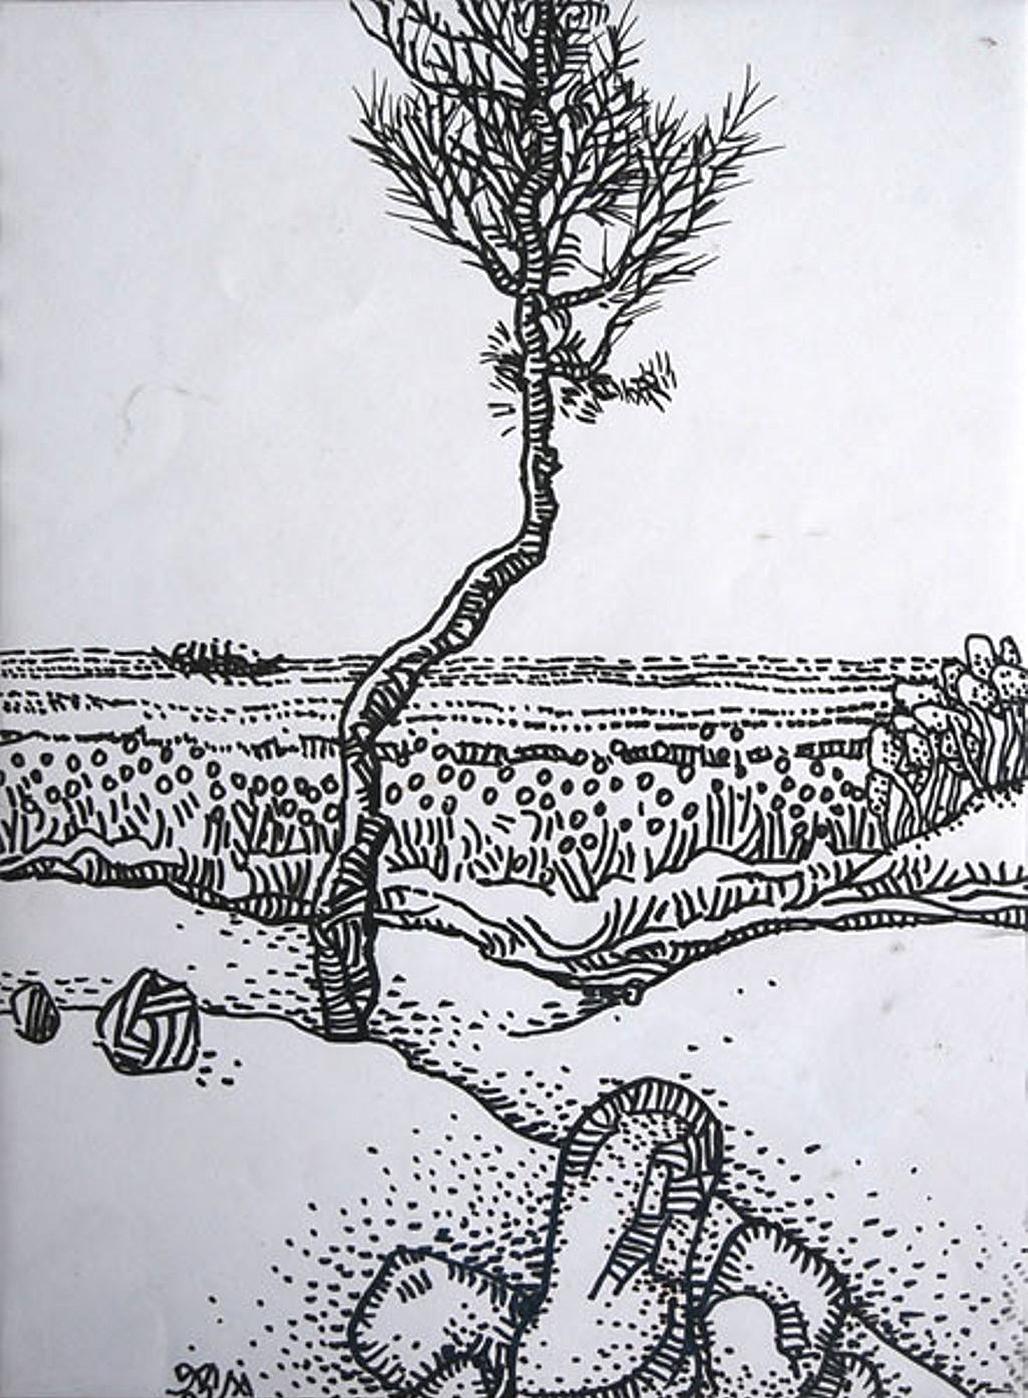 Prakash Karmarkar Landscape Art - Landscape, Ink on Paper by Modern Indian Artist Prokash Karmakar "In Stock"